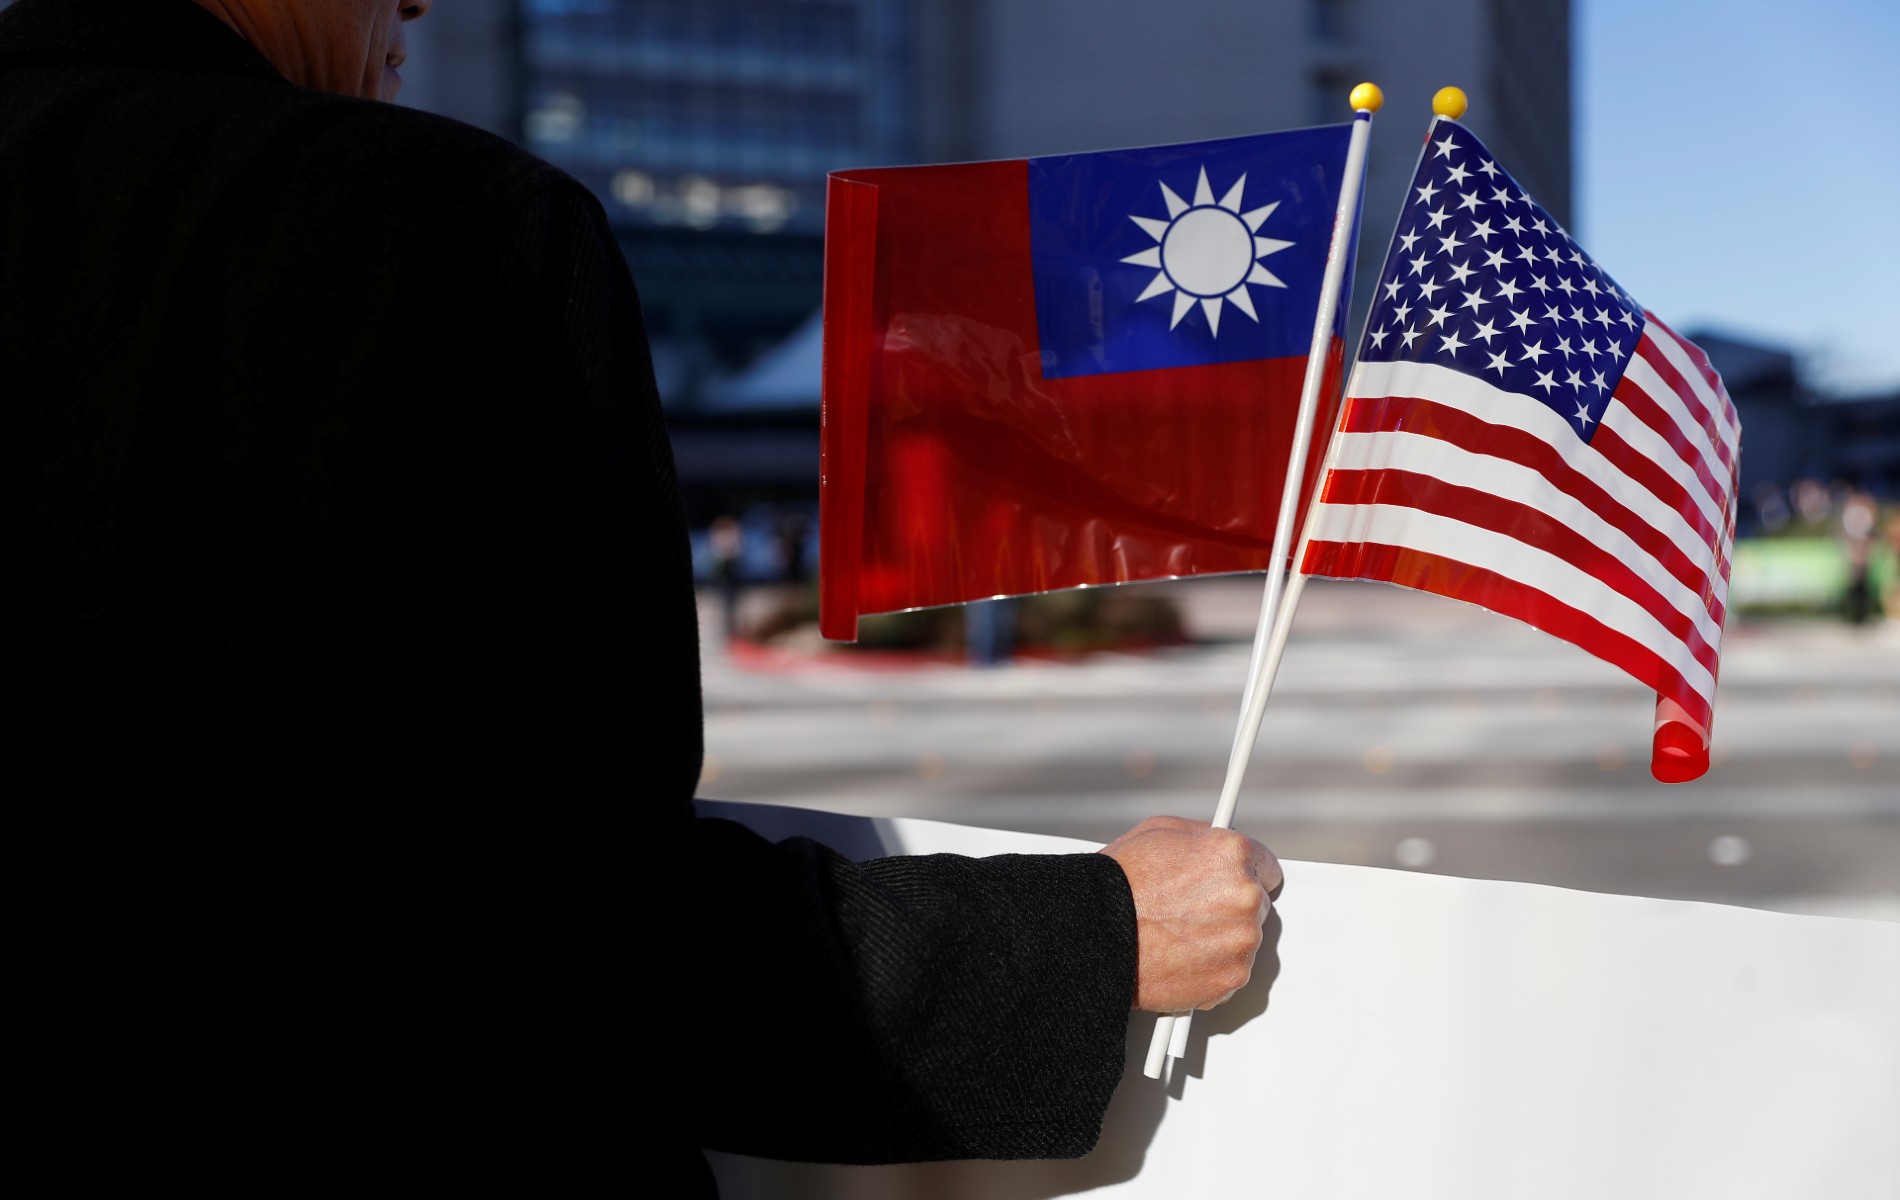 Les Etats-Unis vont signer un nouvel accord commercial avec Taïwan, malgré les tensions avec la Chine